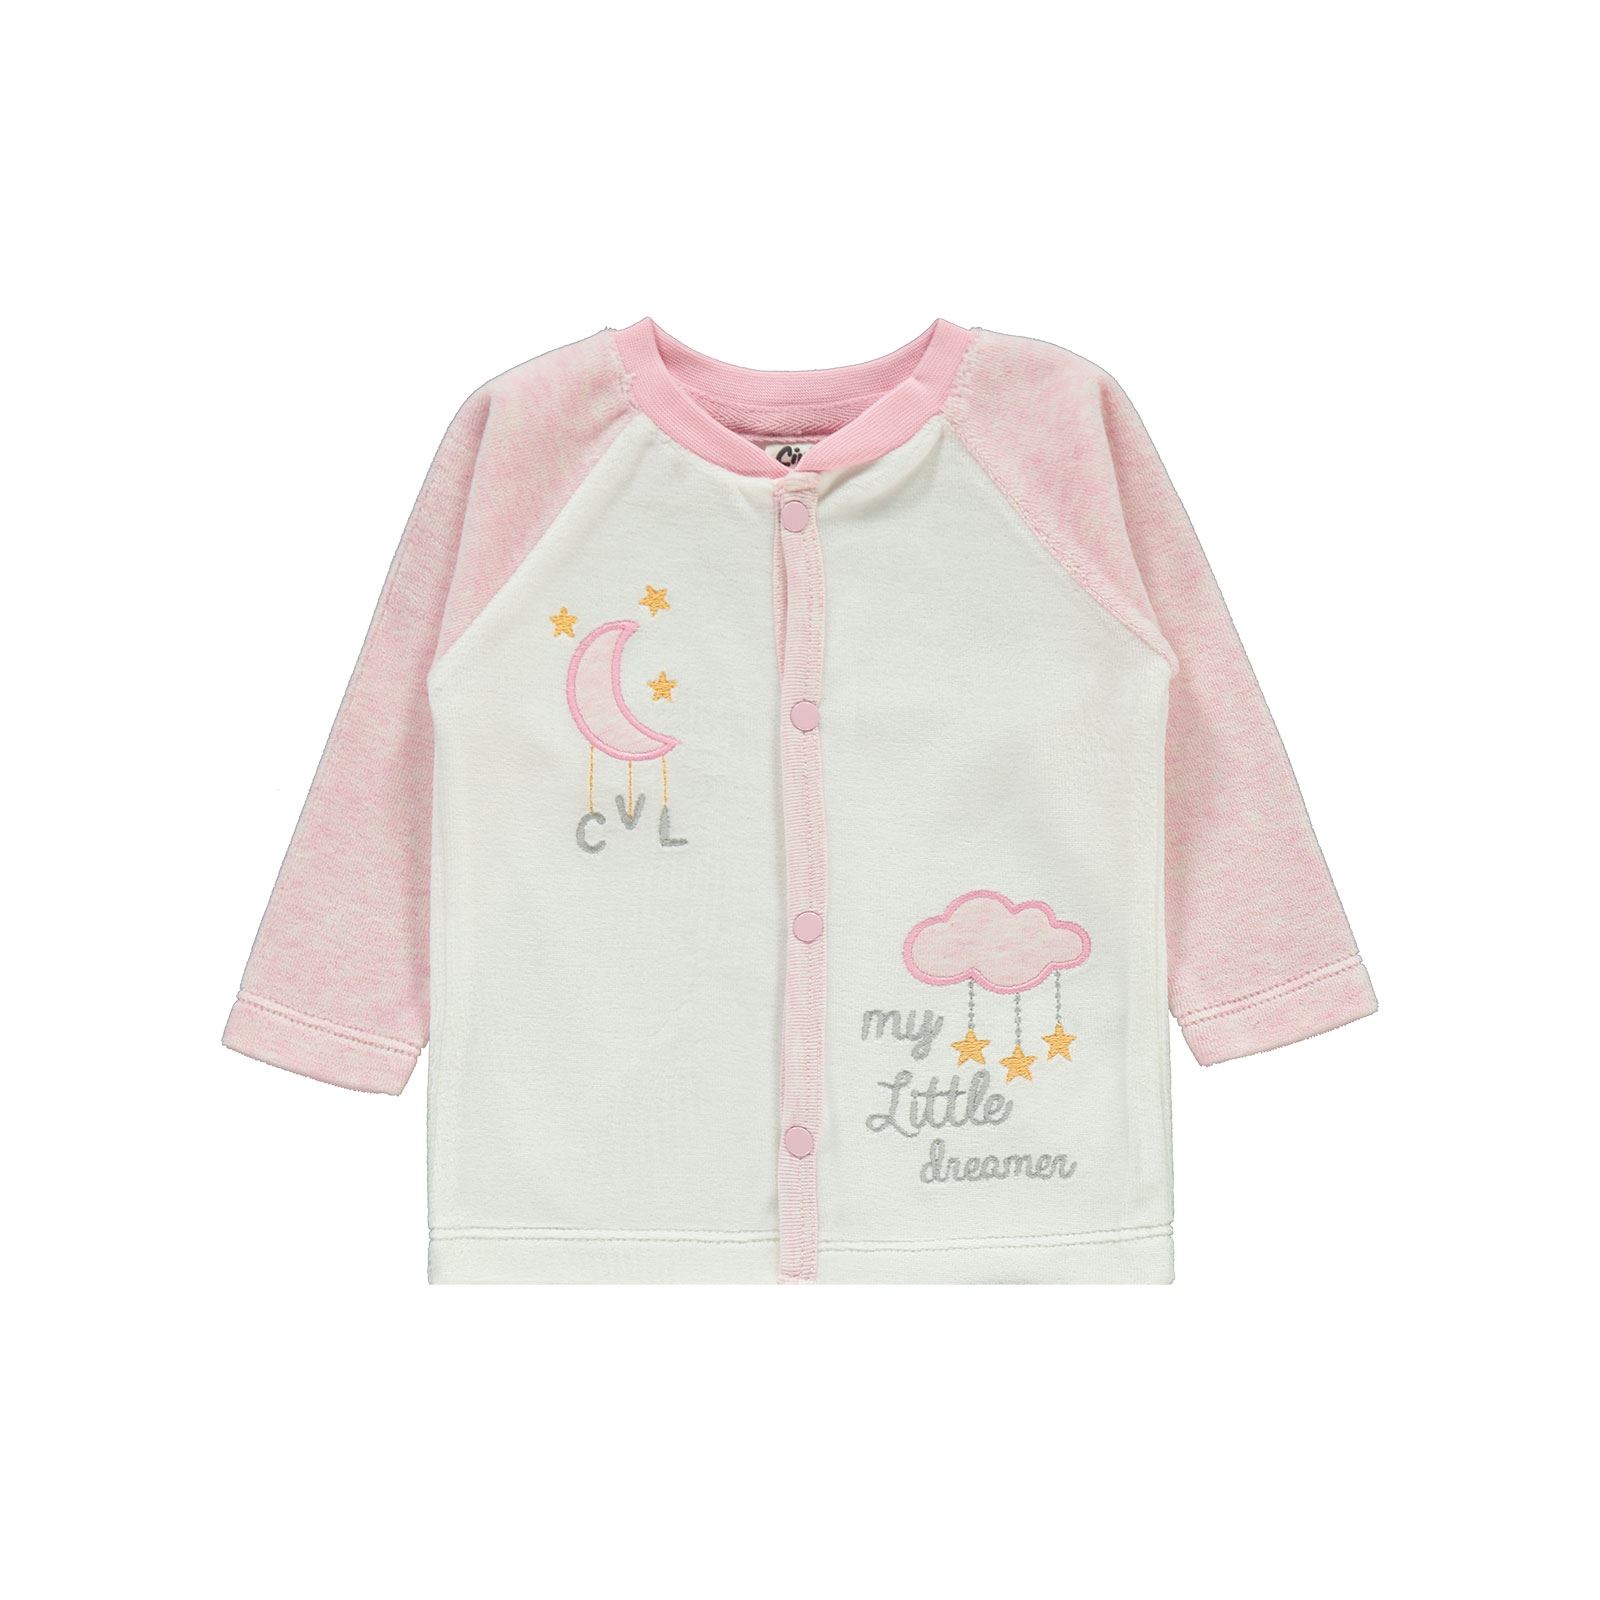 Civil Baby Bebek Pijama Takımı 3-6 Ay Pembe